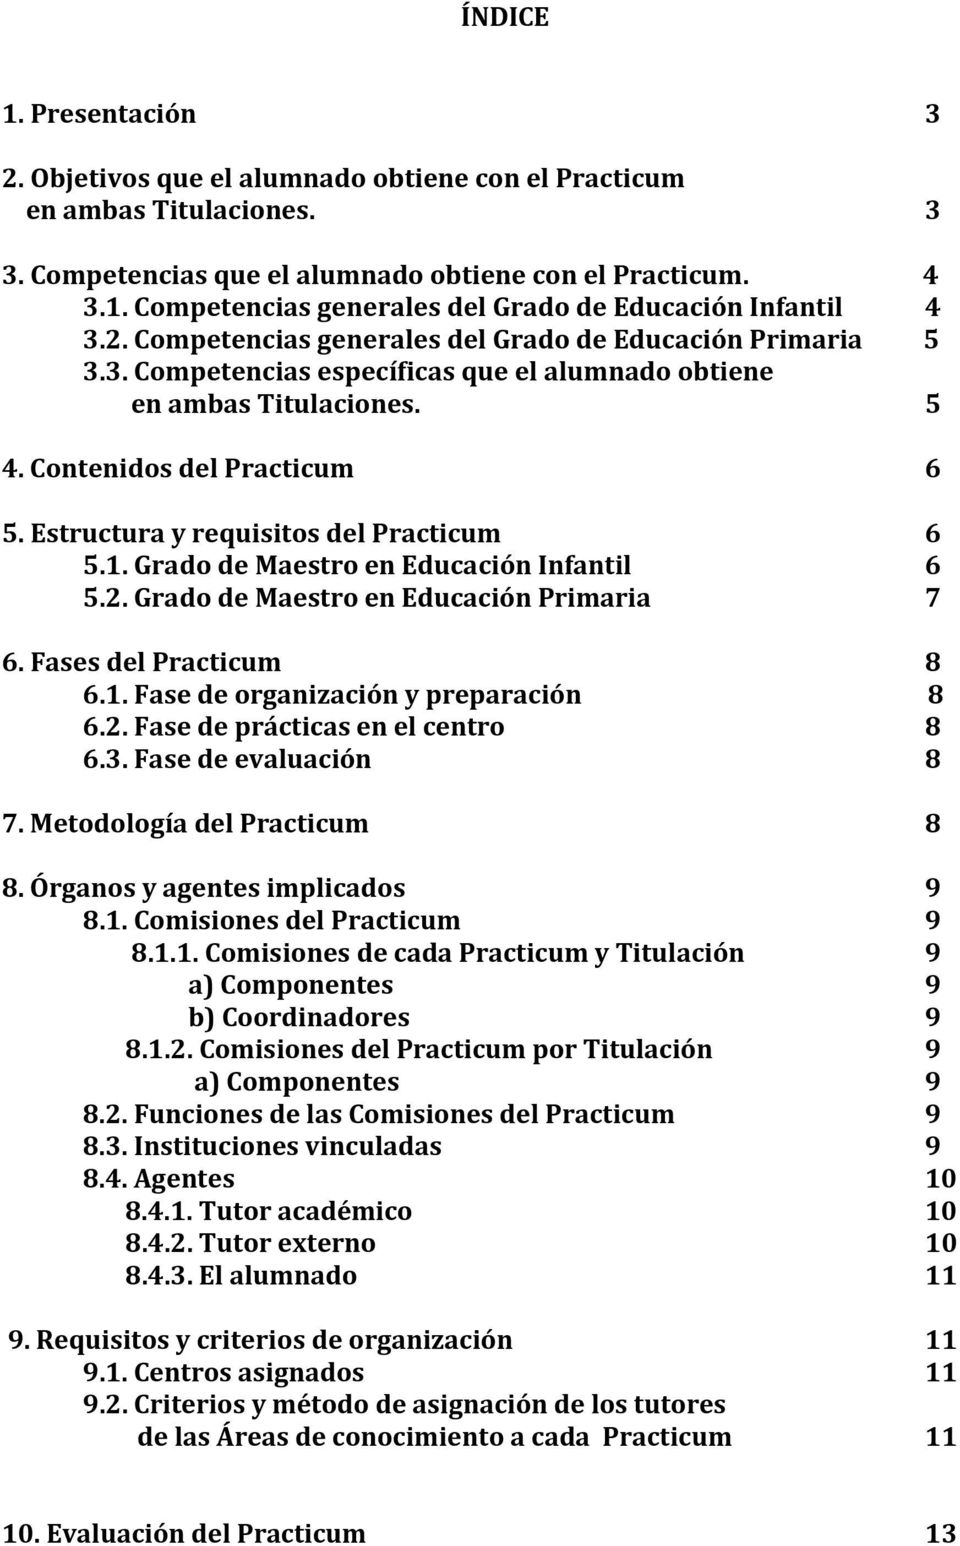 Estructura y requisitos del Practicum 6 5.1. Grado de Maestro en Educación Infantil 6 5.2. Grado de Maestro en Educación Primaria 7 6. Fases del Practicum 8 6.1. Fase de organización y preparación 8 6.